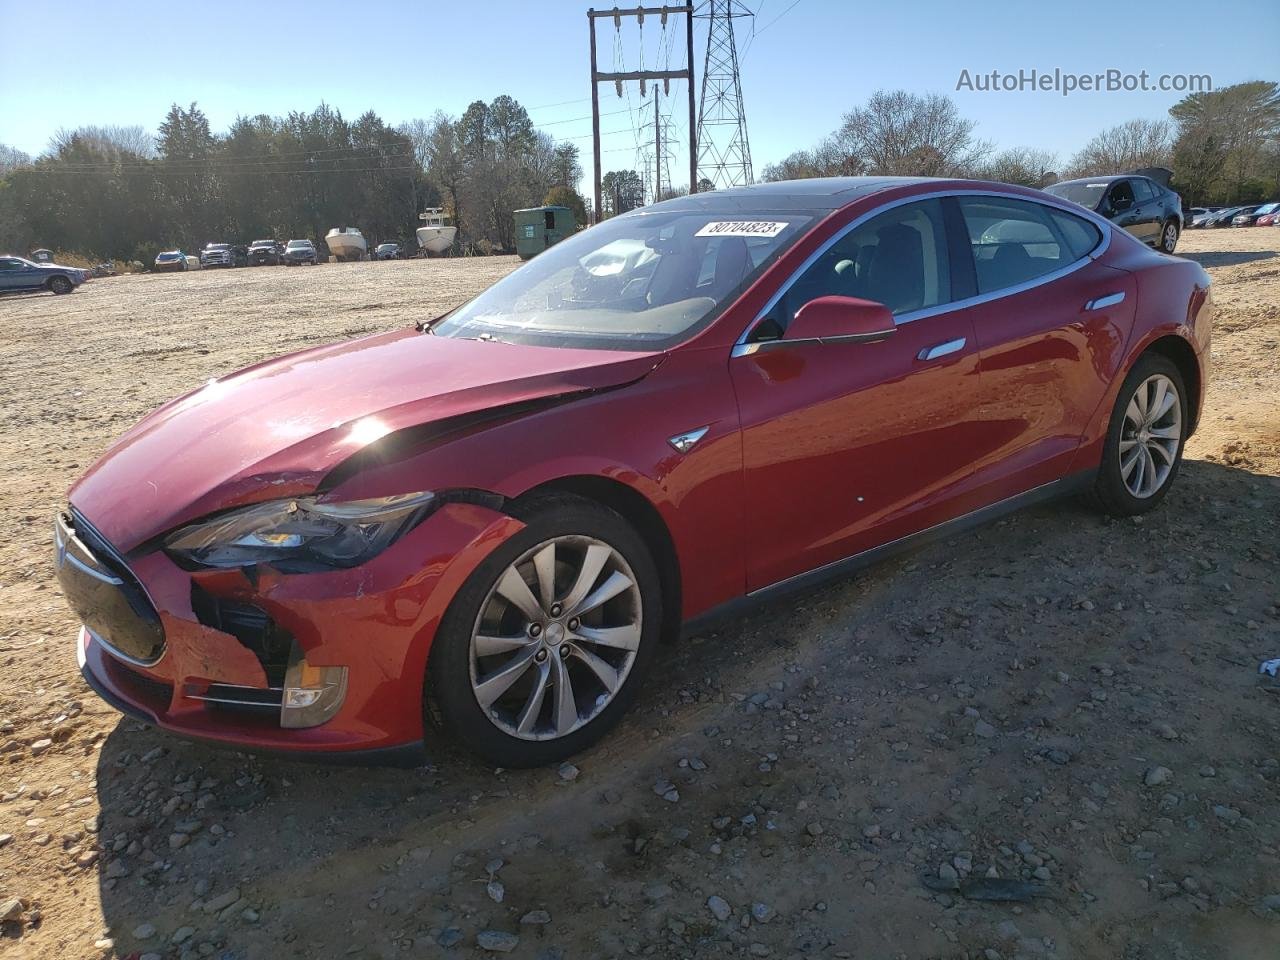 2014 Tesla Model S  Red vin: 5YJSA1H10EFP29102